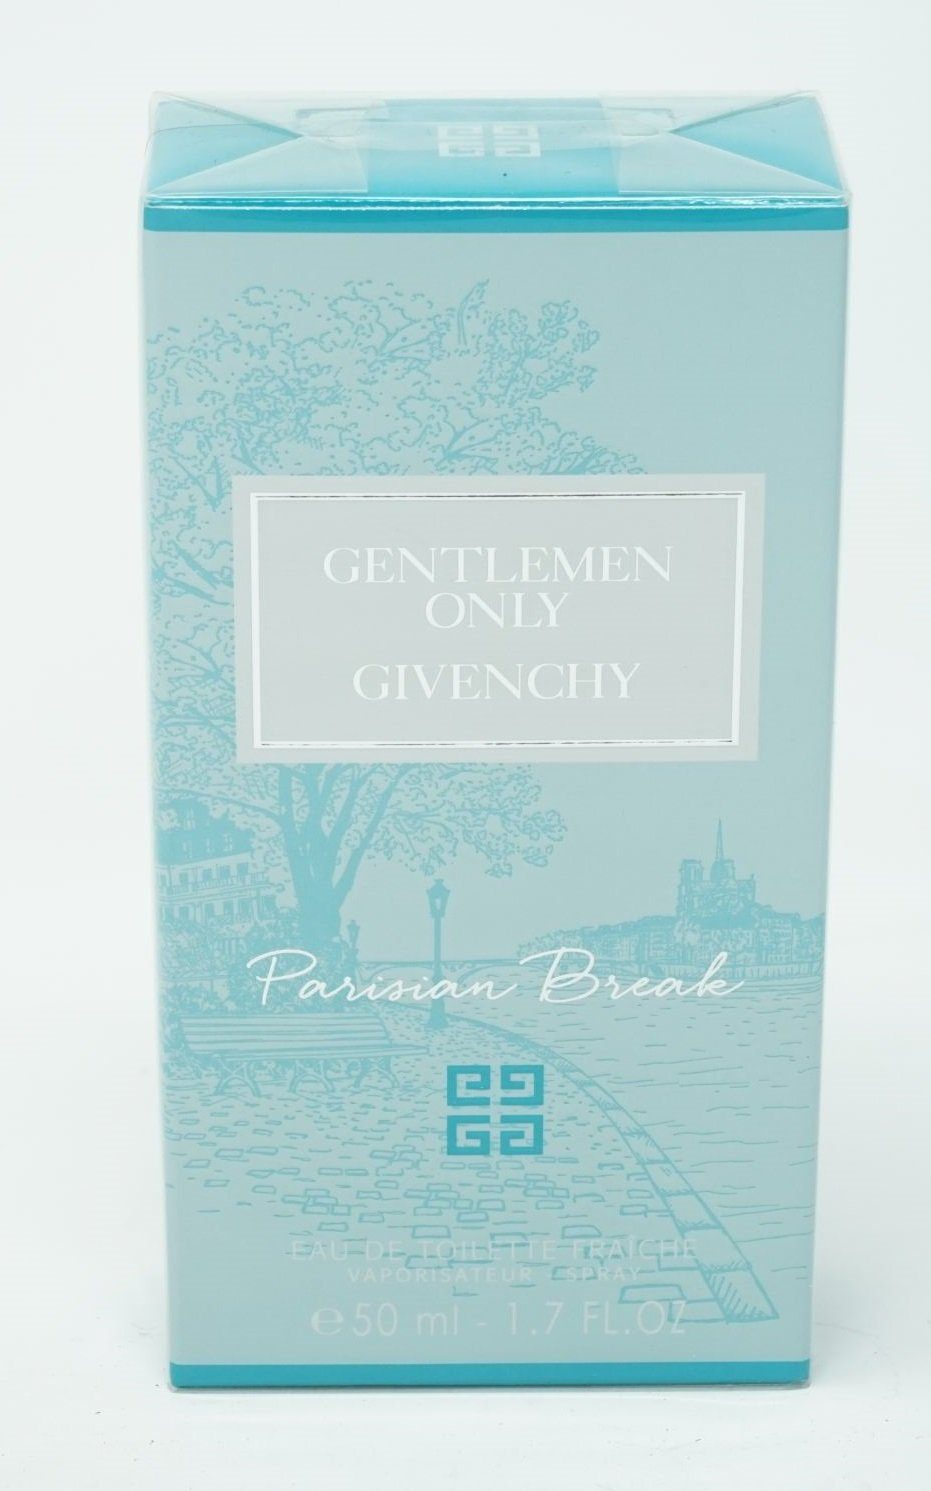 Break Toilette Only Gentleman Eau ml Eau GIVENCHY Givenchy Parisian de Toilette 50 Spray de